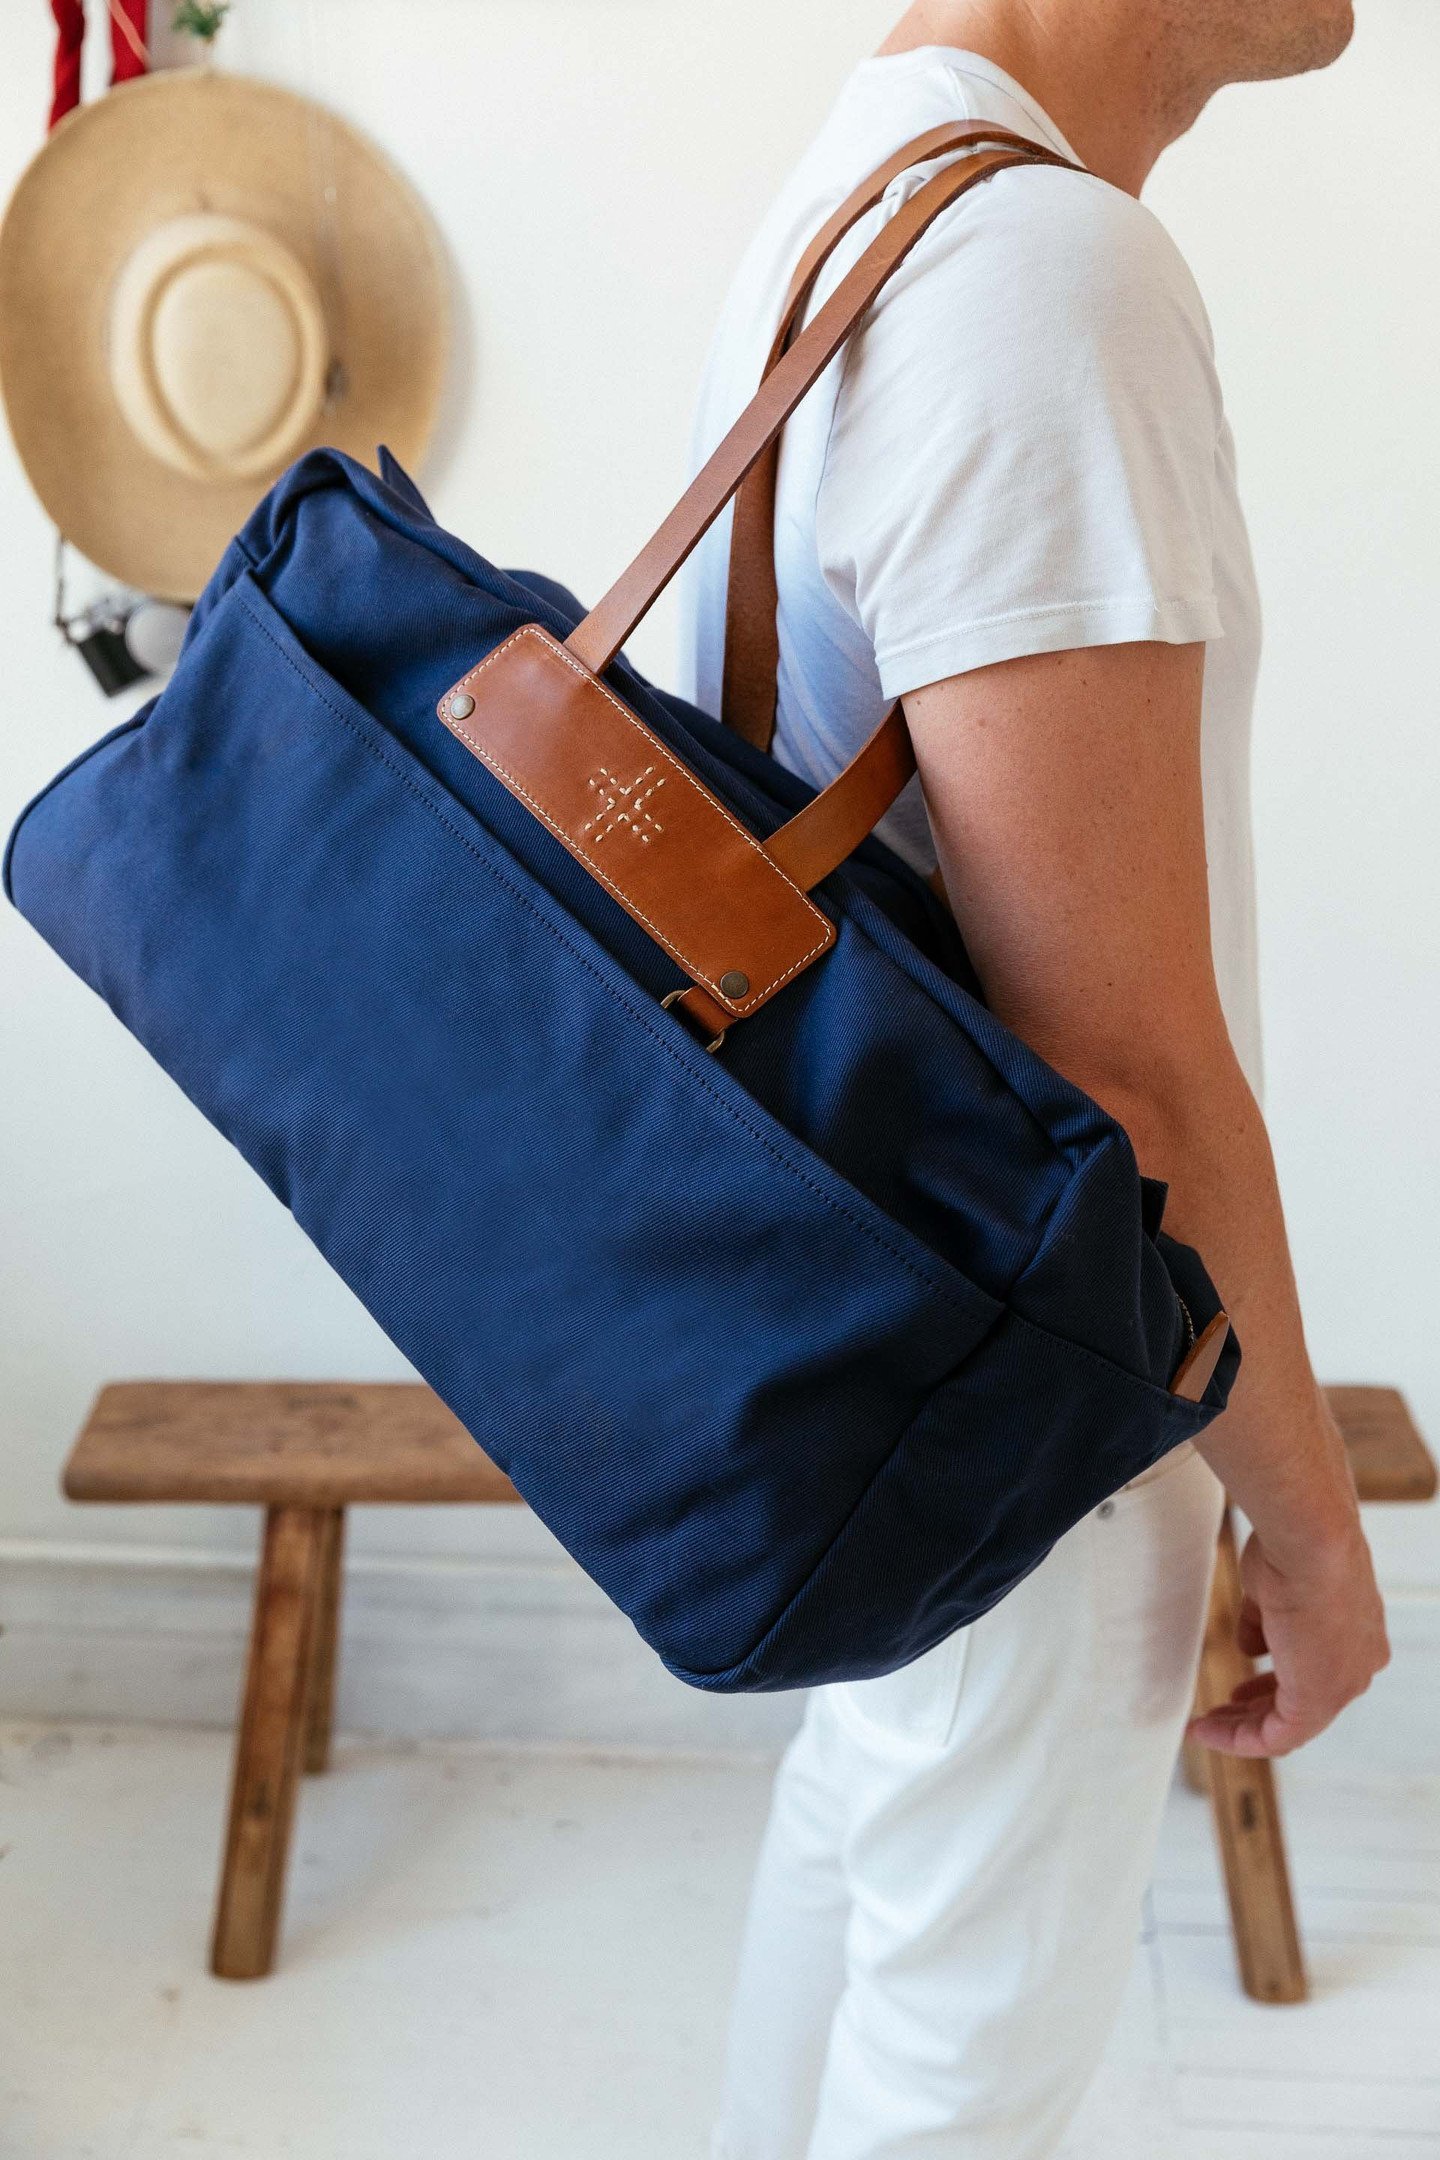 Blue Canvas Weekender Bag